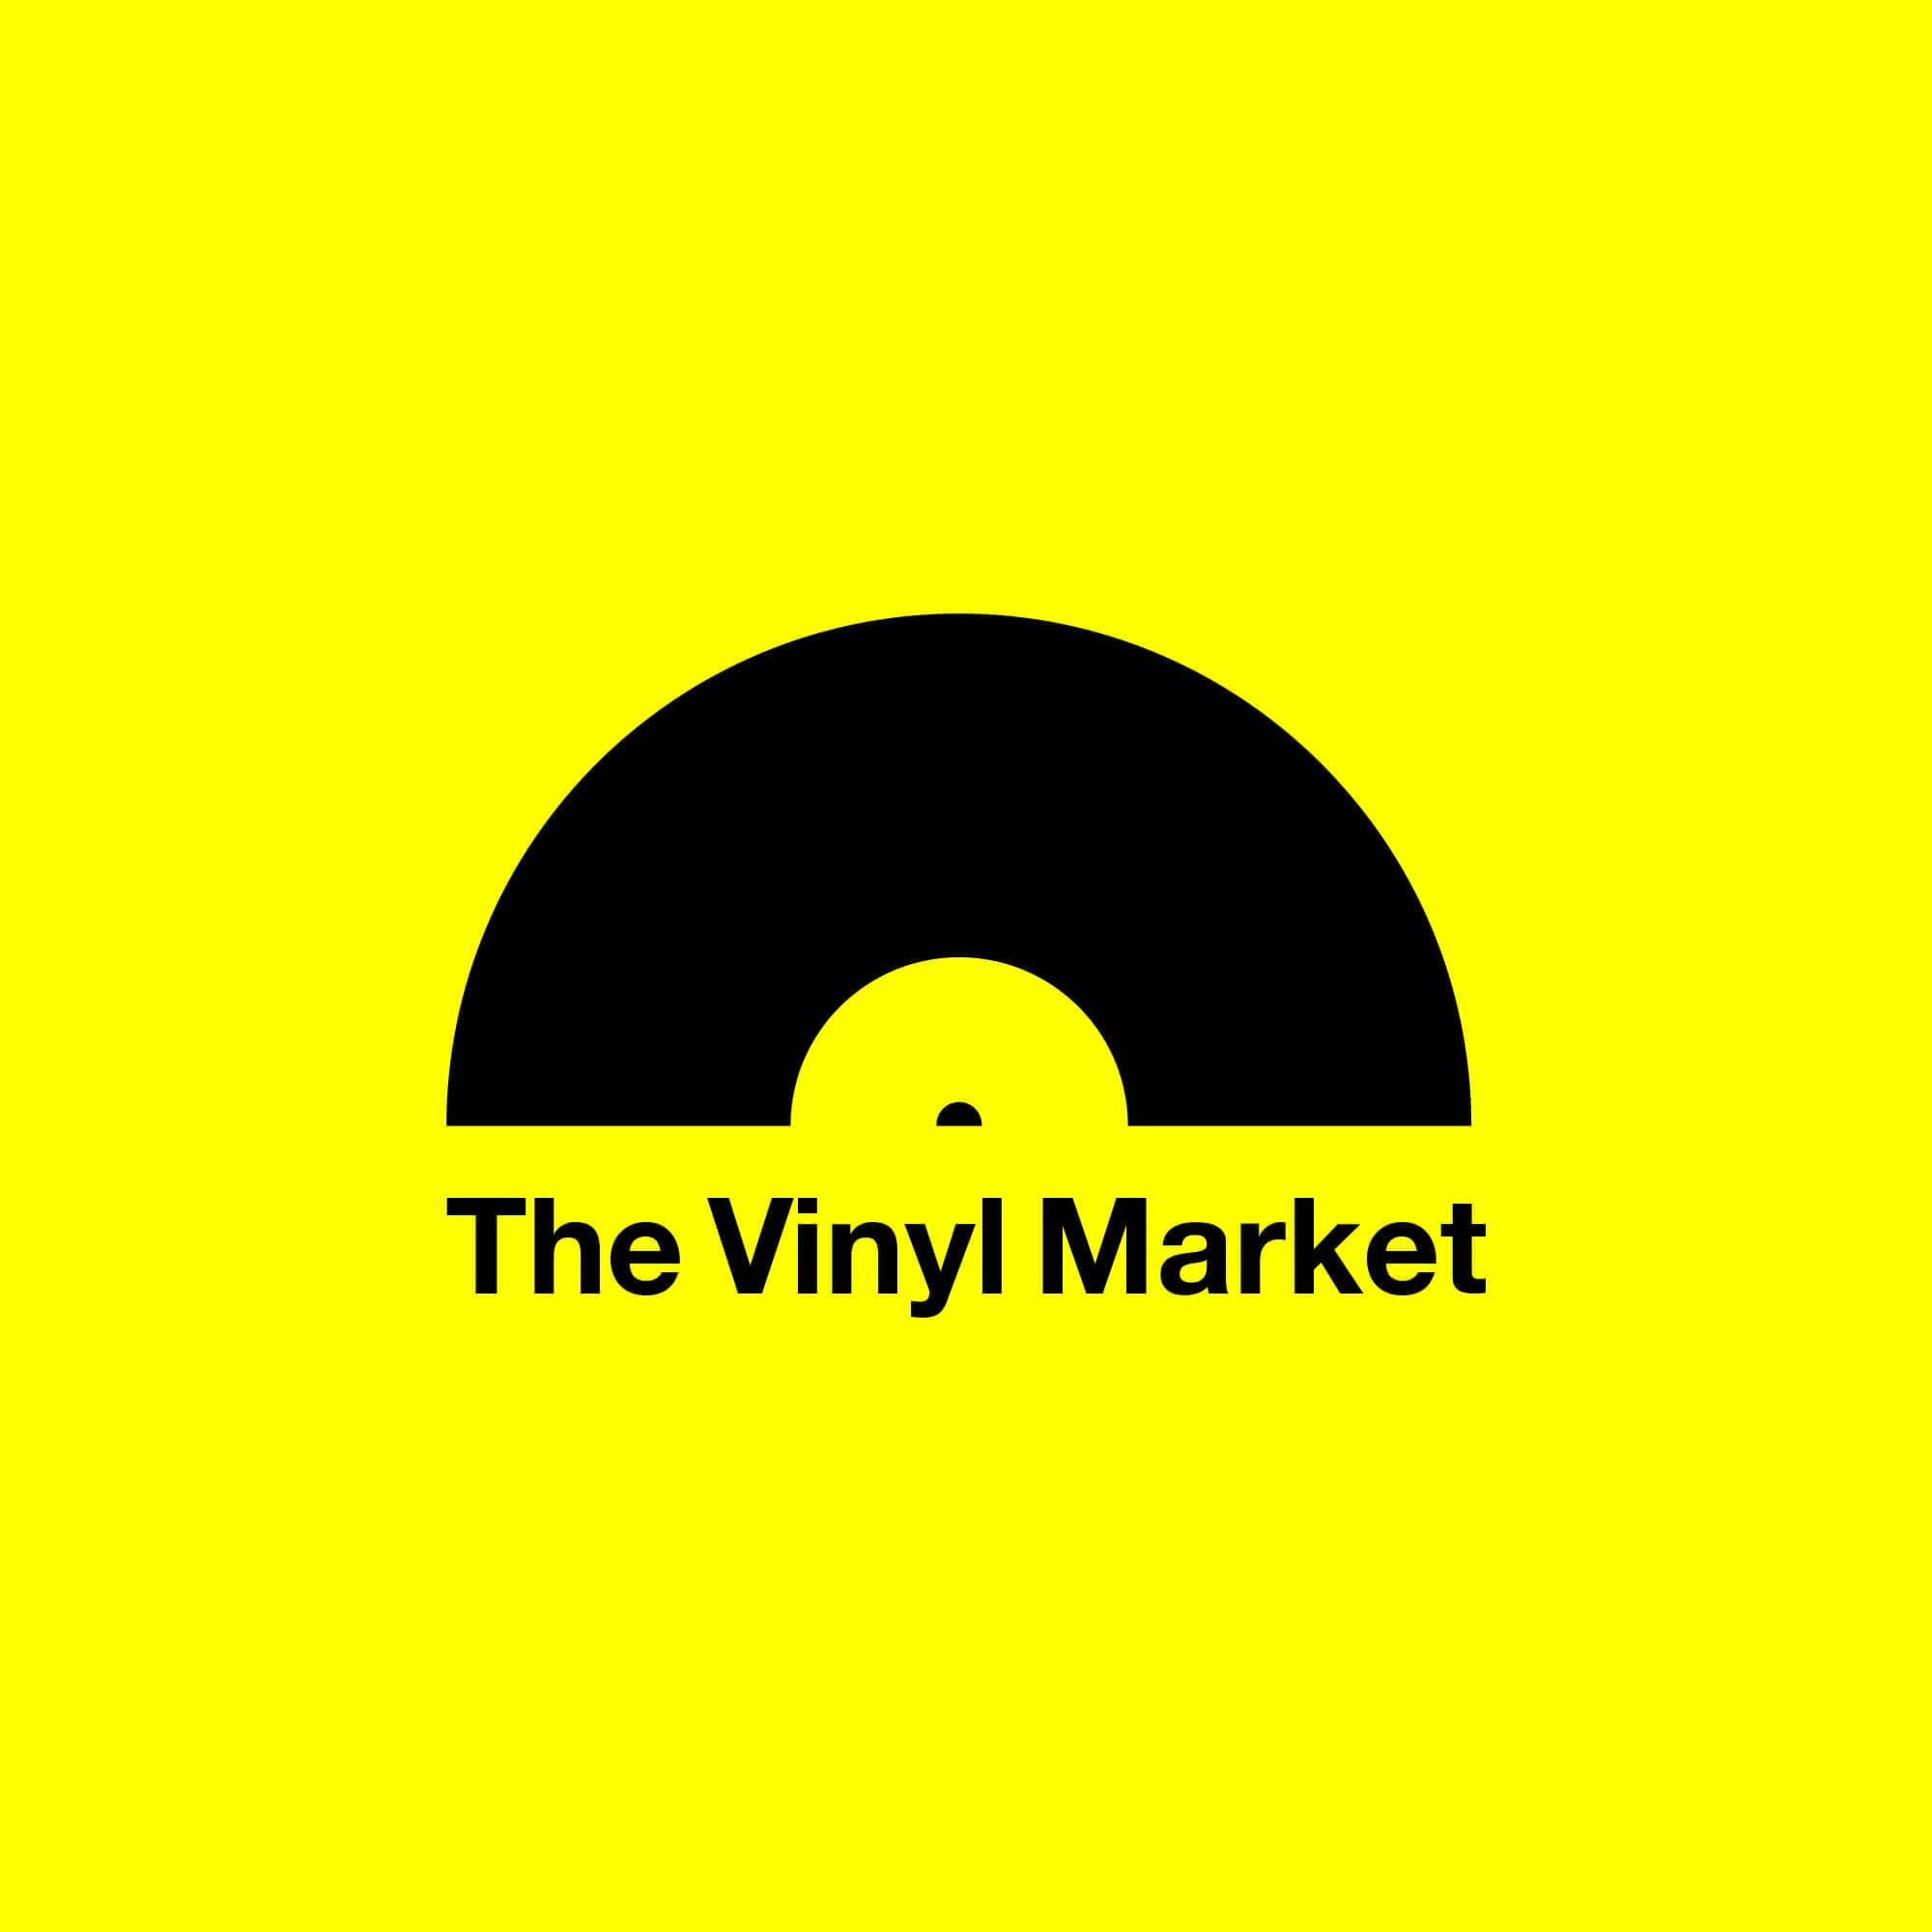 Key Visual: The Vinyl Market